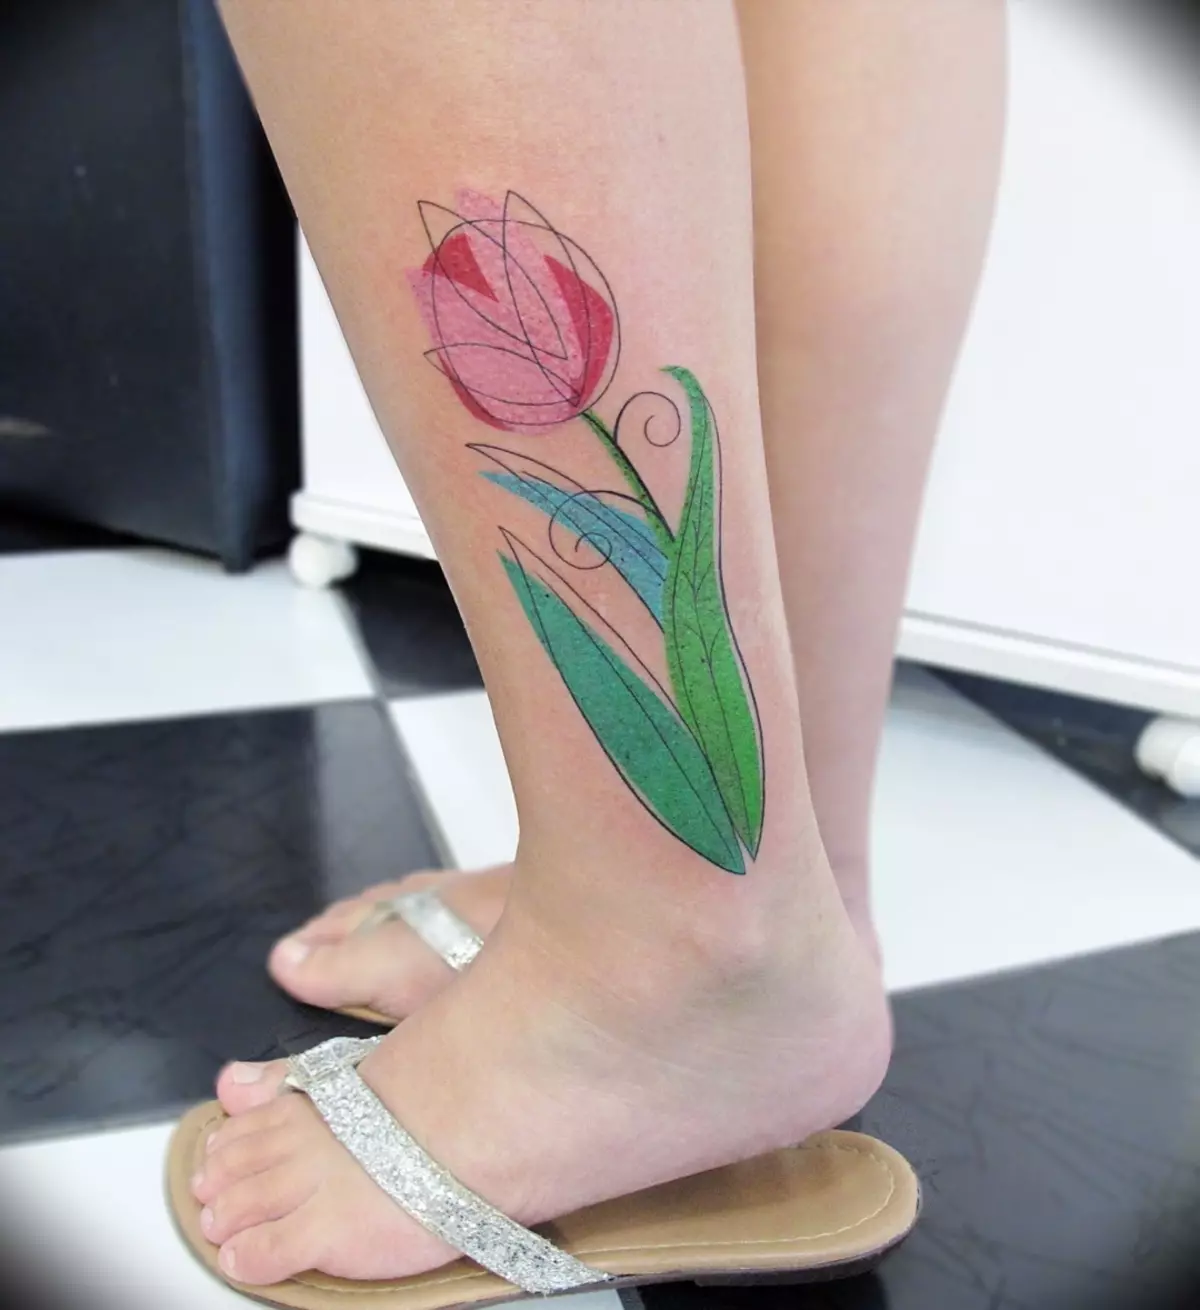 ស្នាមសាក់ជាមួយ tulips: តម្លៃនៃការចាក់សាក់សម្រាប់ក្មេងស្រីនិងសម្រាប់បុរសការបង្ហាញប្រភេទរូបភាព។ ការចាក់សាក់នៅលើដៃនៅលើកដៃនិងនៅតំបន់ផ្សេងទៀត tulip ខ្មៅនិងជម្រើសផ្សេងទៀត 14192_15